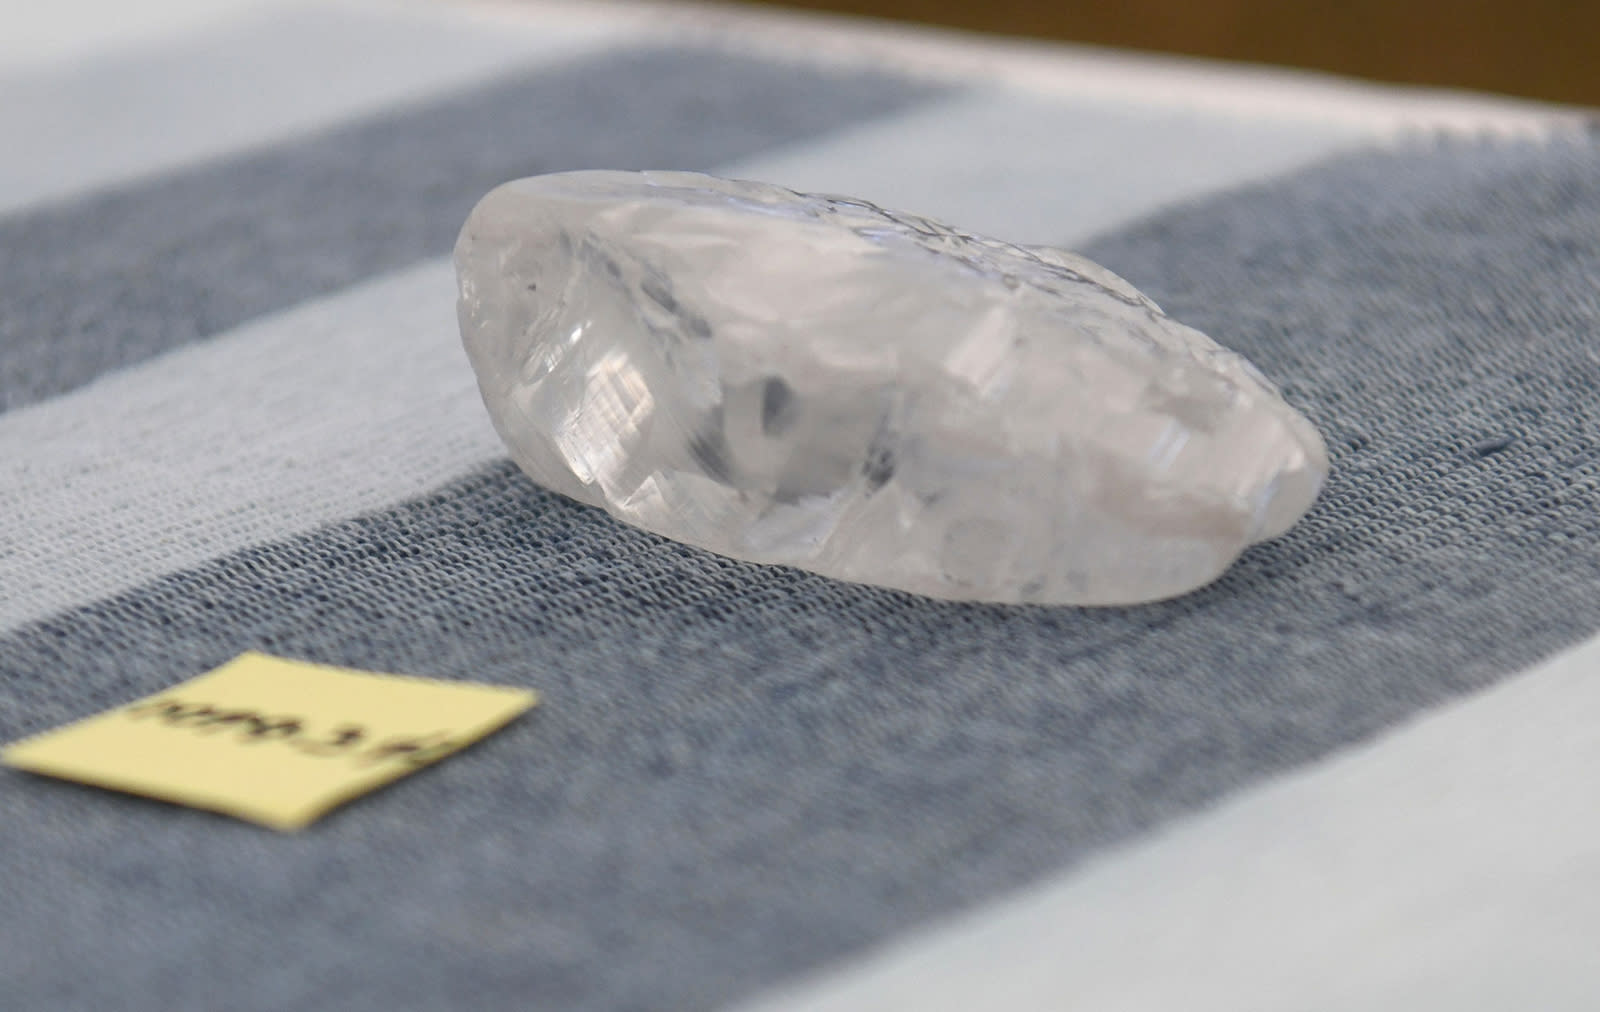 بوزن يتجاوز ألف قيراط.. اكتشاف أحد أكبر أحجار الماس في العالم في بوتسوانا 